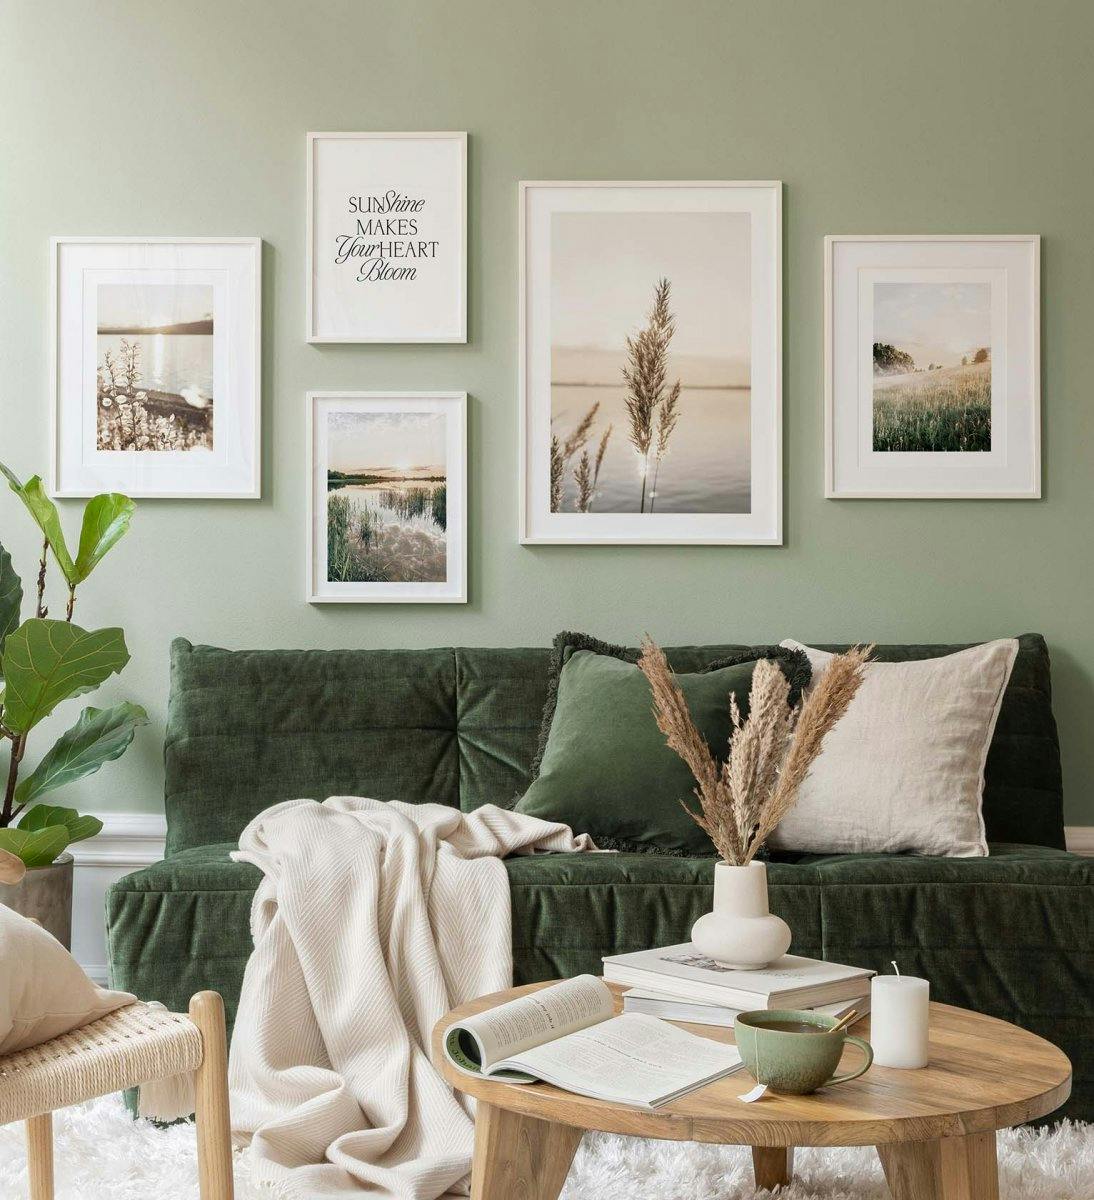 Landschapsfotografie in een groen thema zorgt voor een serene sfeer in de woonkamer